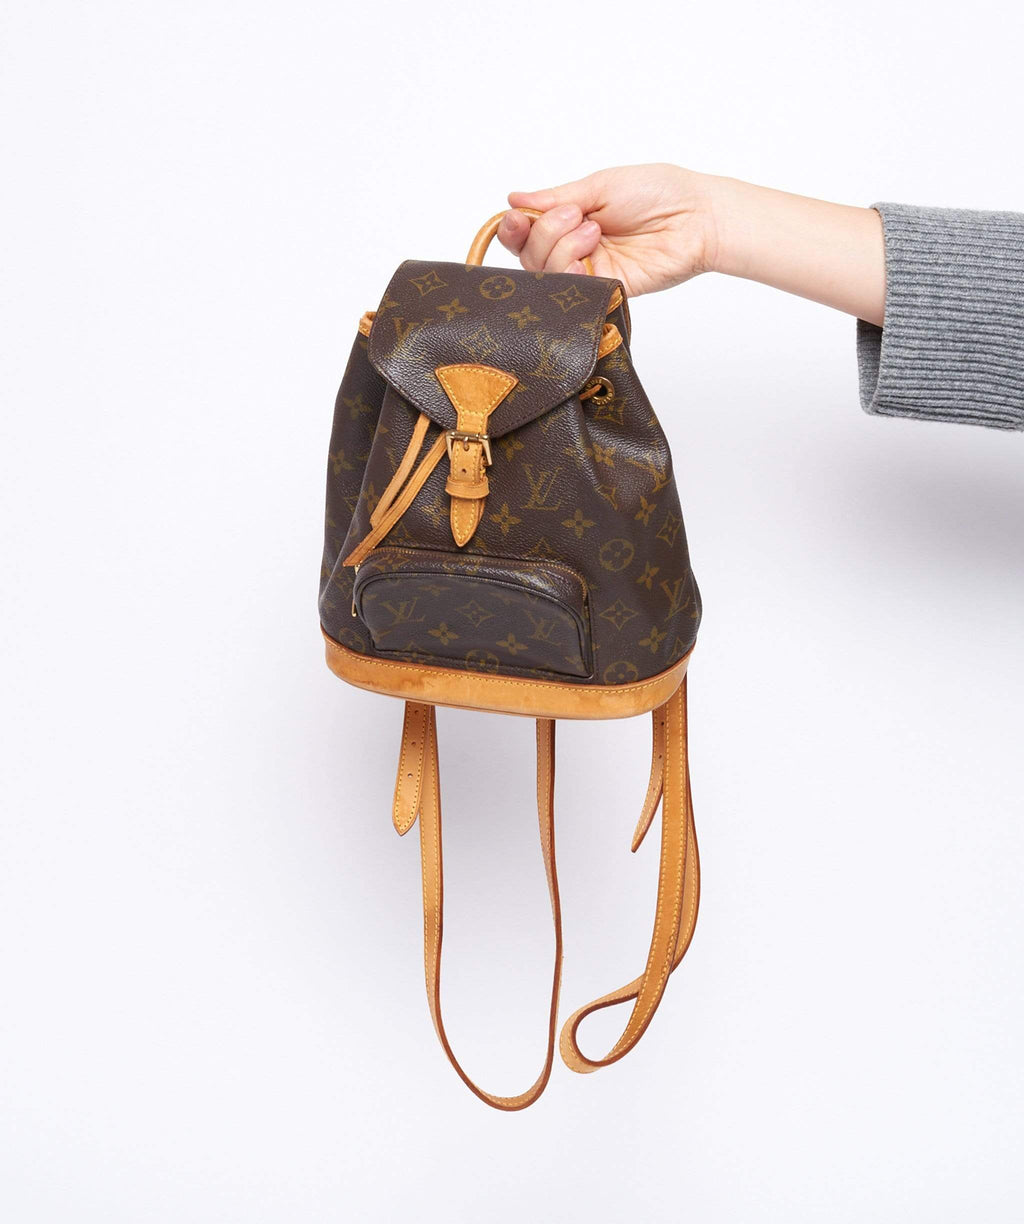 Louis Vuitton Monogram Montsouris PM Backpack ○ Labellov ○ Buy